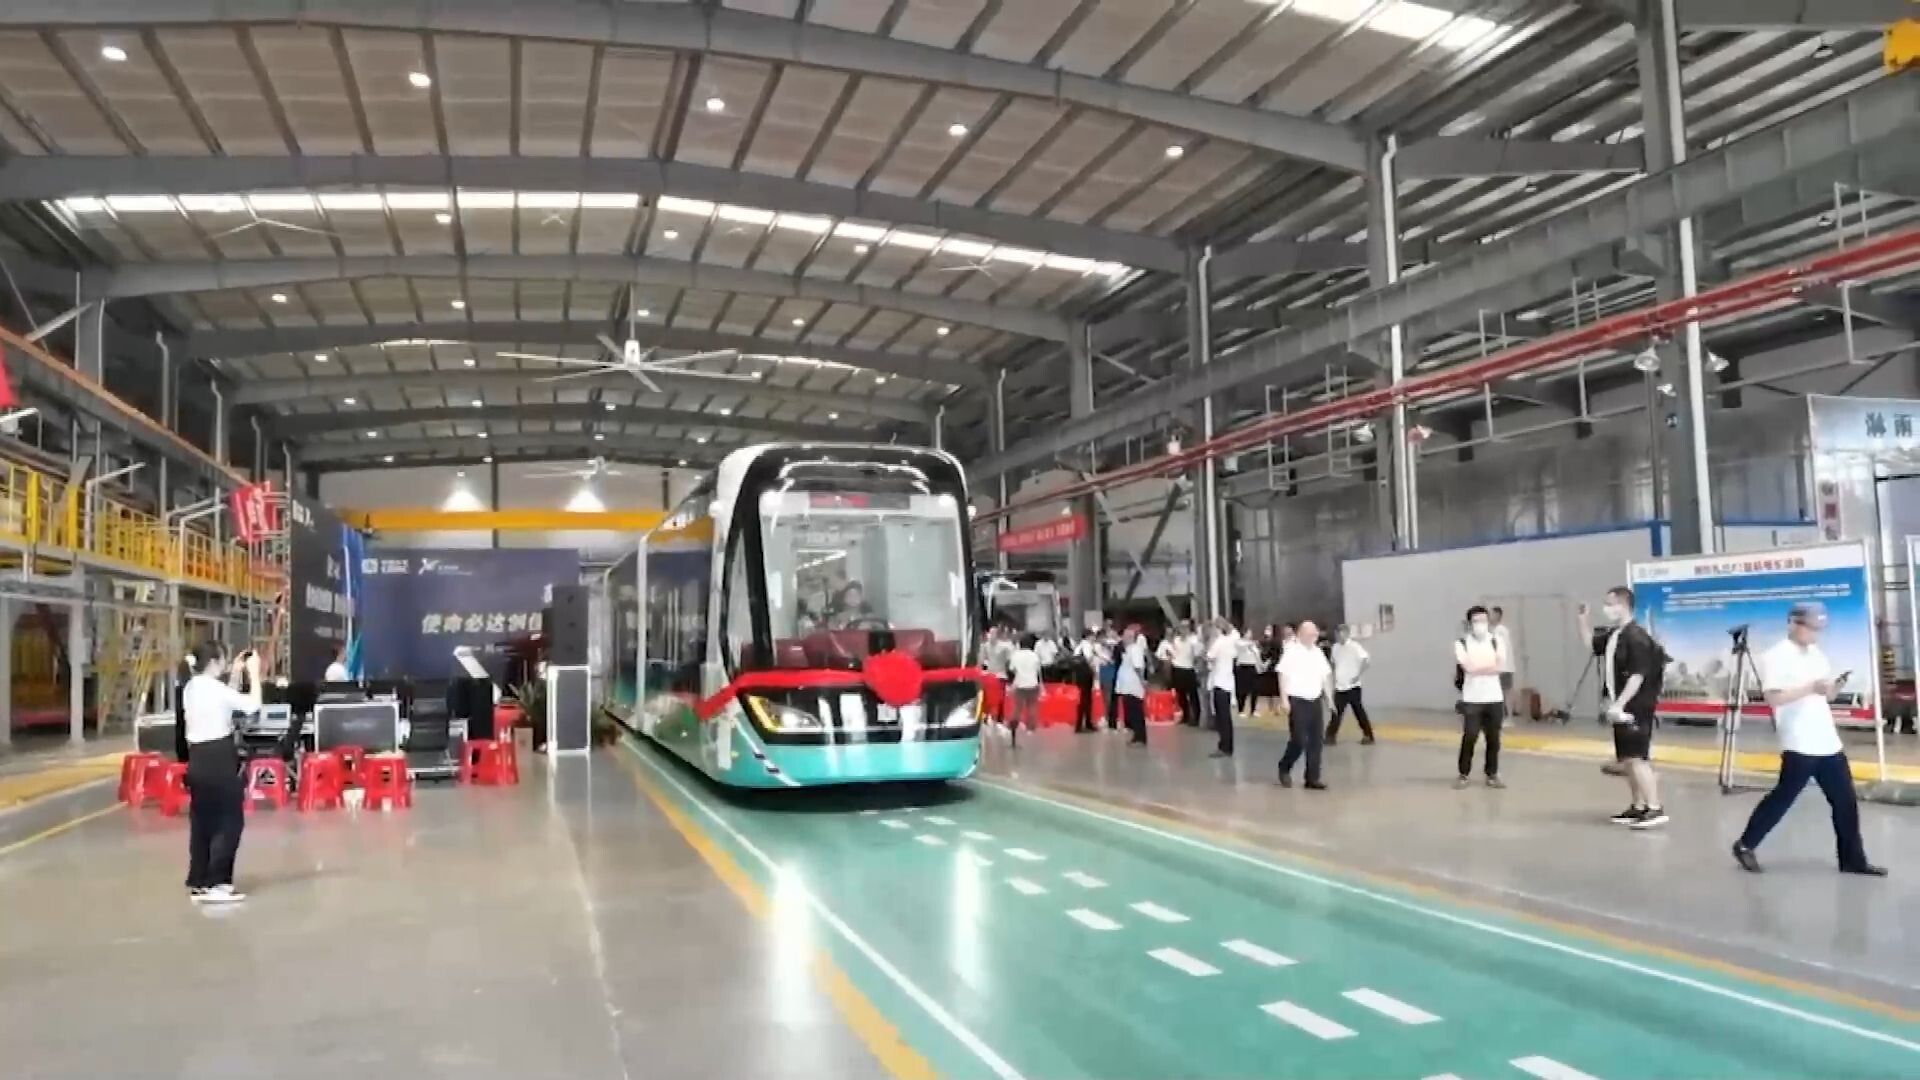 บริษัทจีนส่งออก 'รถไฟไร้รางอัจฉริยะ' เตรียมวิ่งในยูเออี